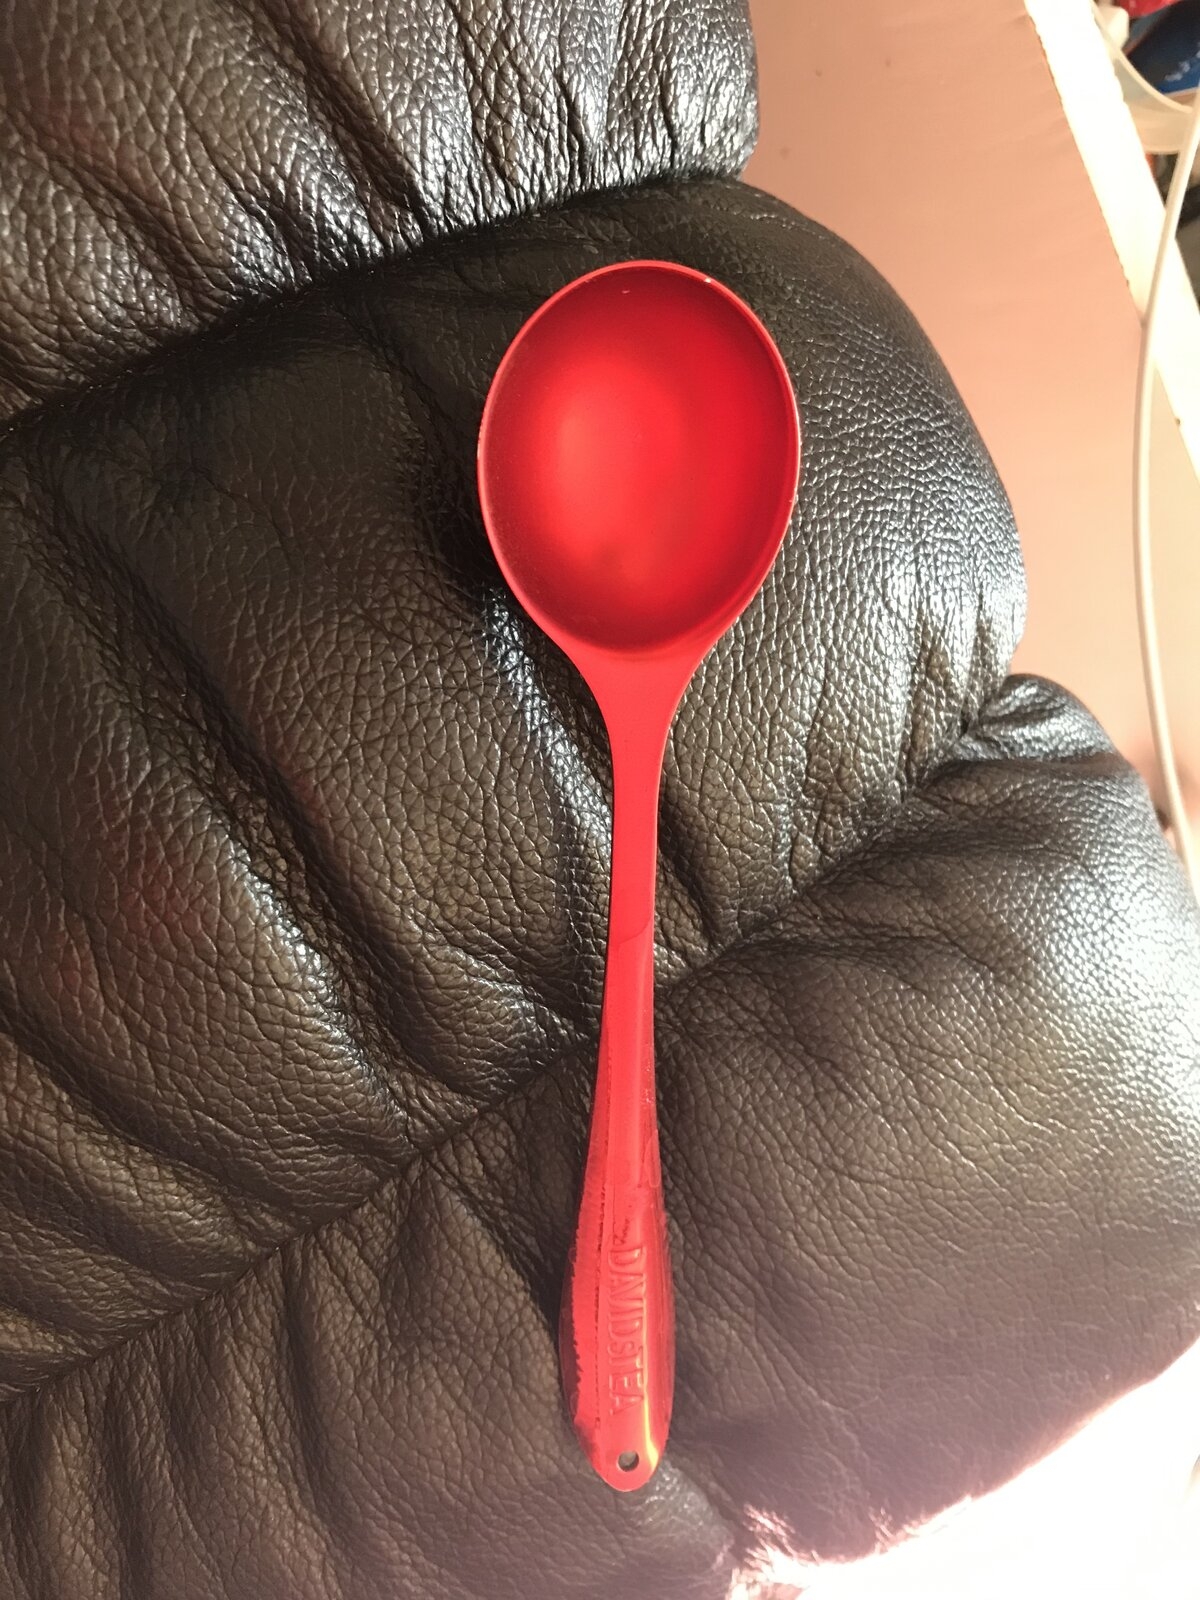 Red Spoon.jpg